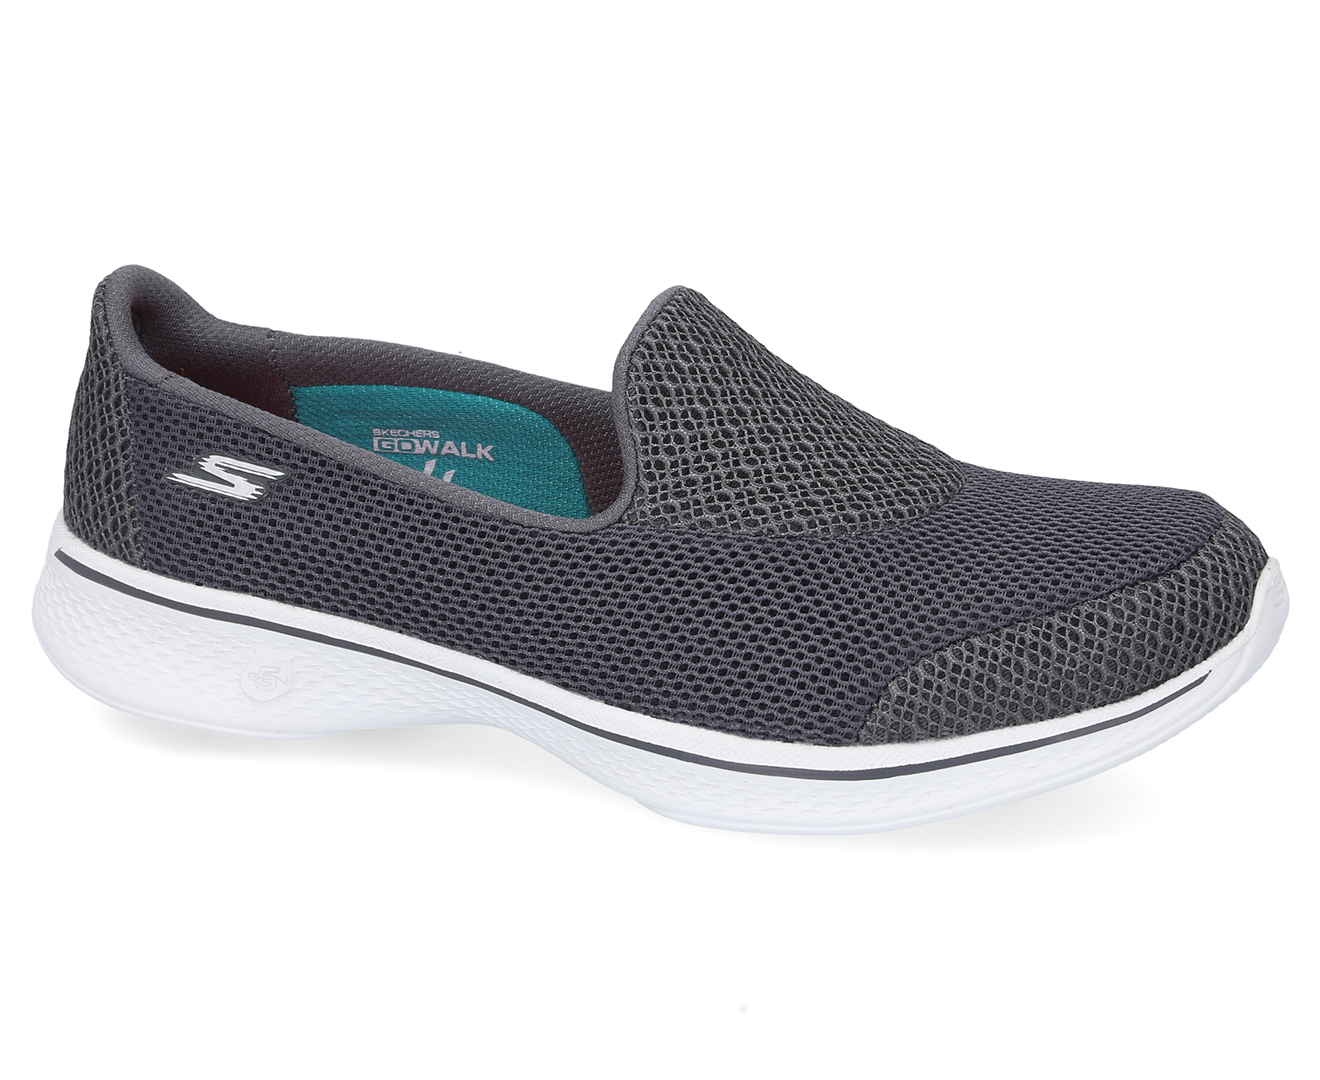 Skechers Women's Go Walk 4 Propel Slip-On Sneakers - Charcoal | Catch ...